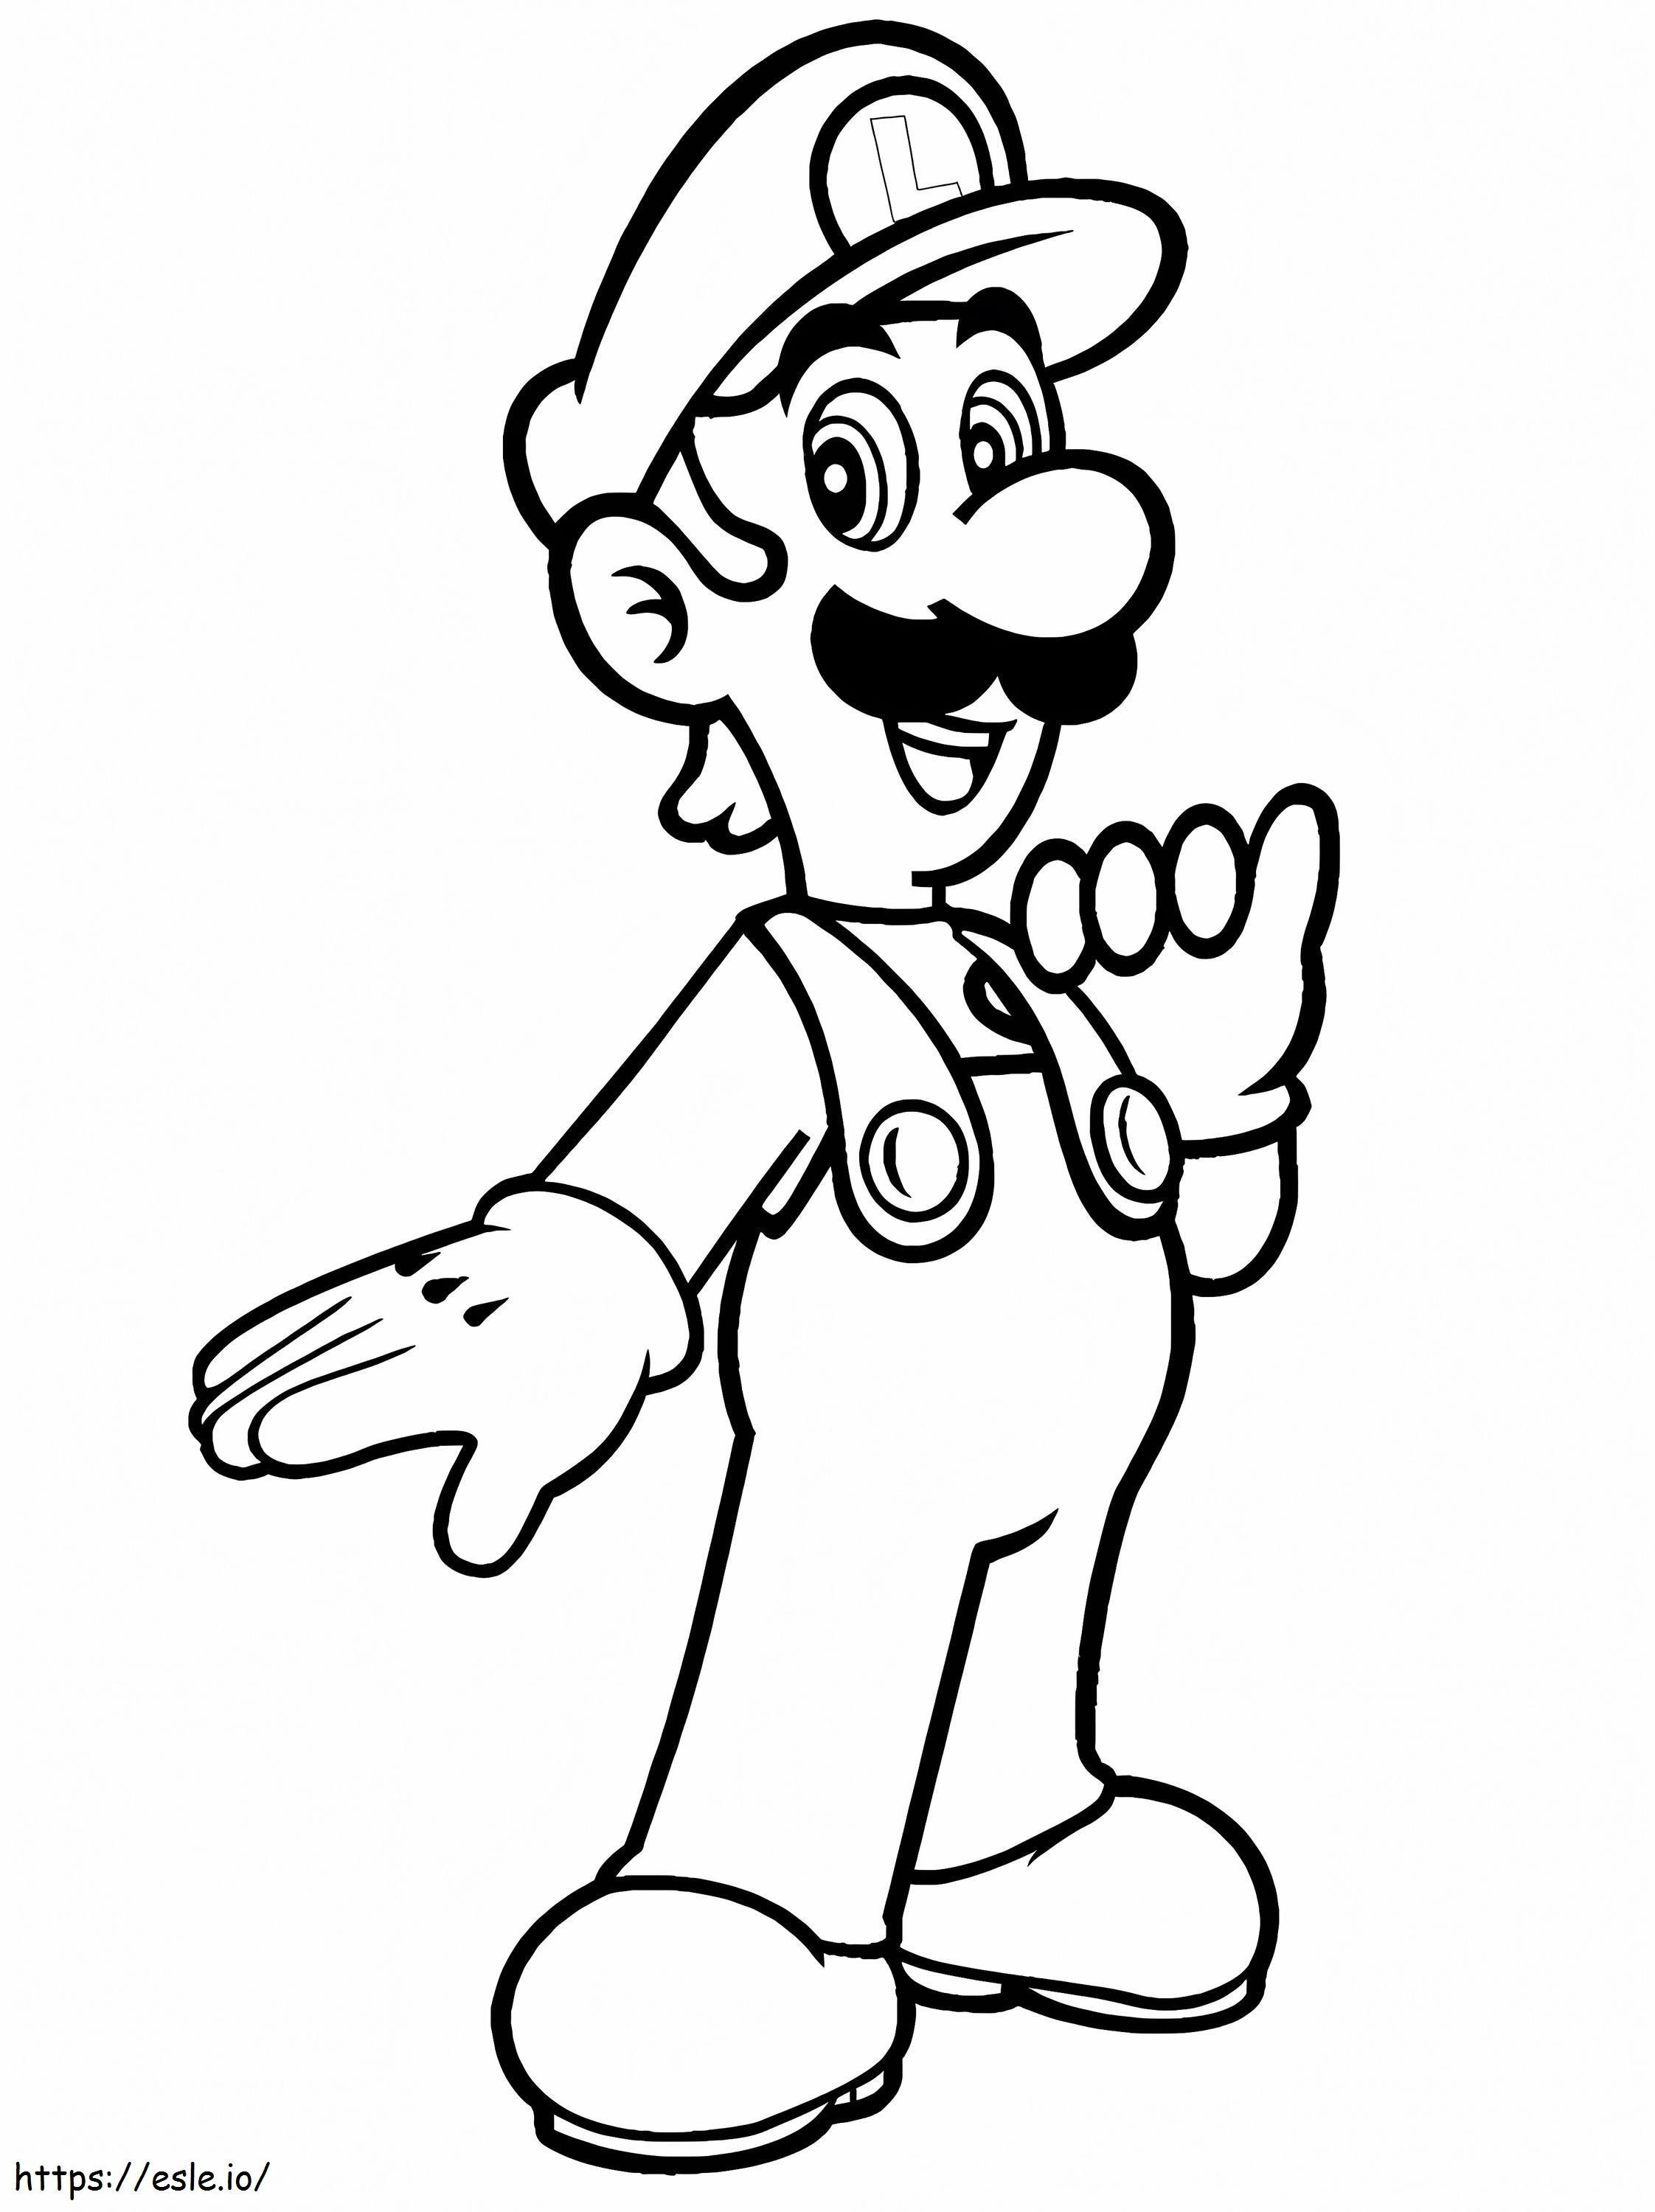 Coloriage Louis De Super Mario 1 à imprimer dessin